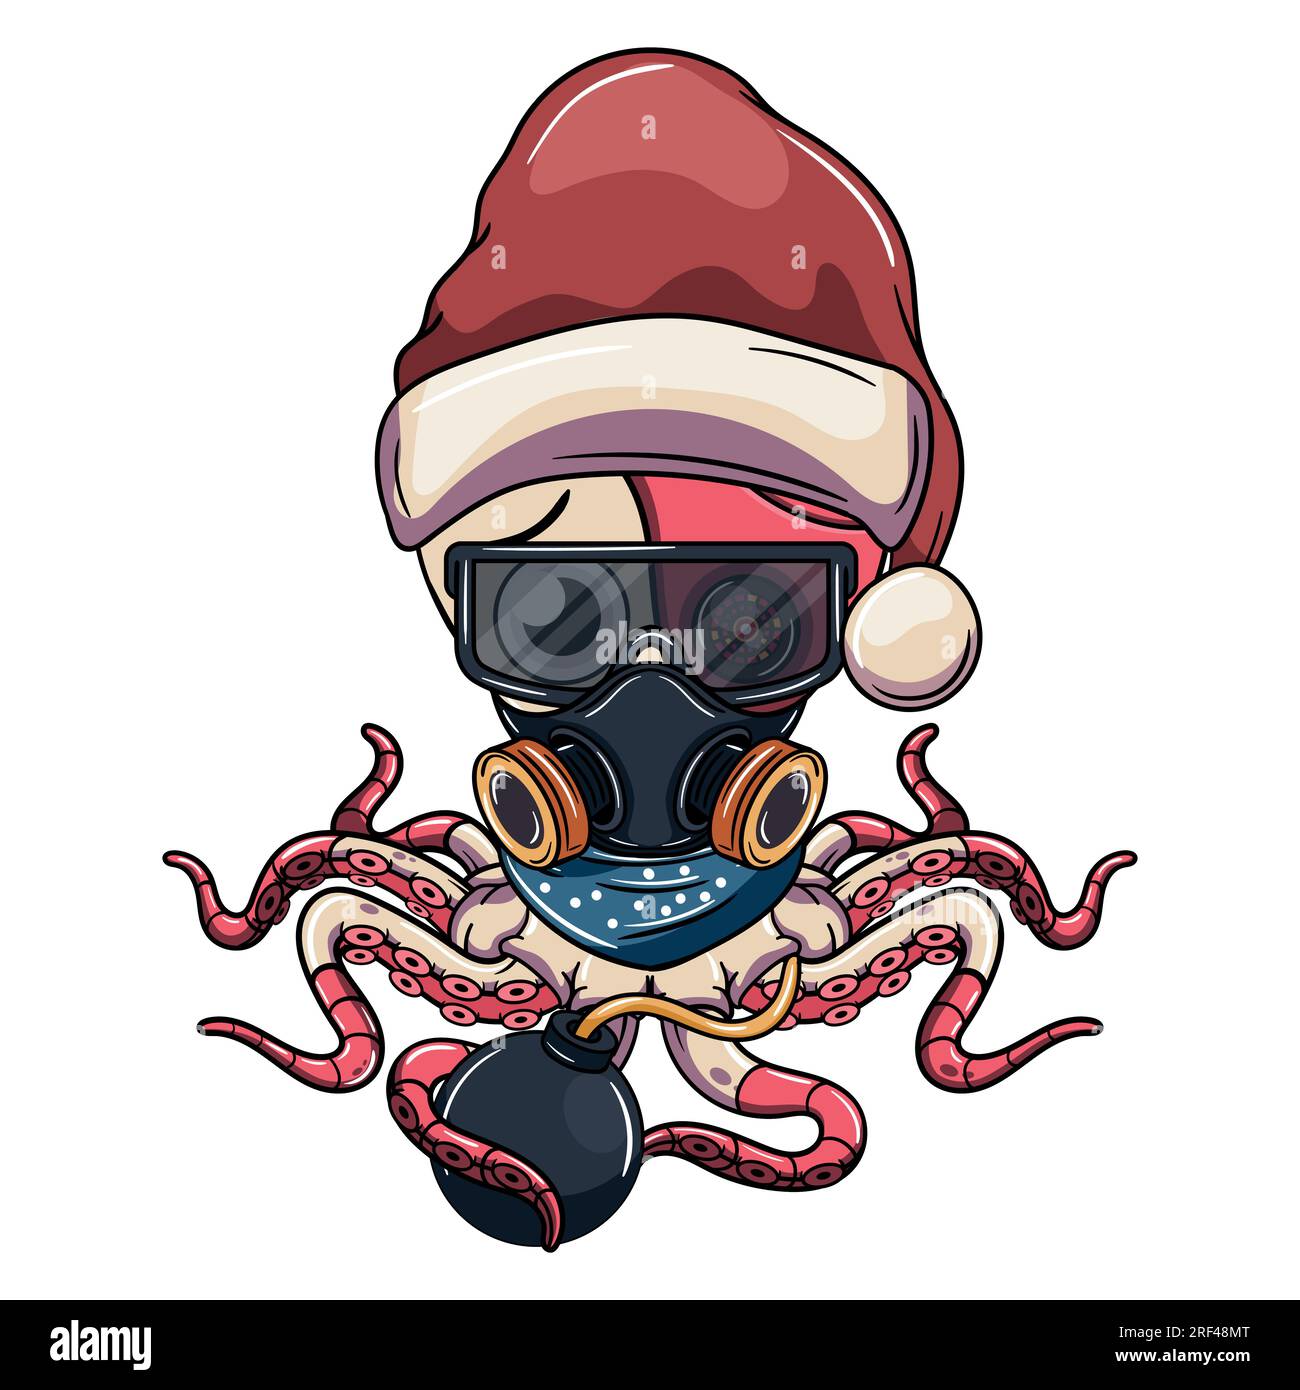 Cartoon traurige Cyborg Oktopus Figur mit weihnachtsmann Hut, Brille und Gasmaske mit einer Bombe. Illustration für Fantasie, Science-Fiction und Abenteuer C. Stock Vektor